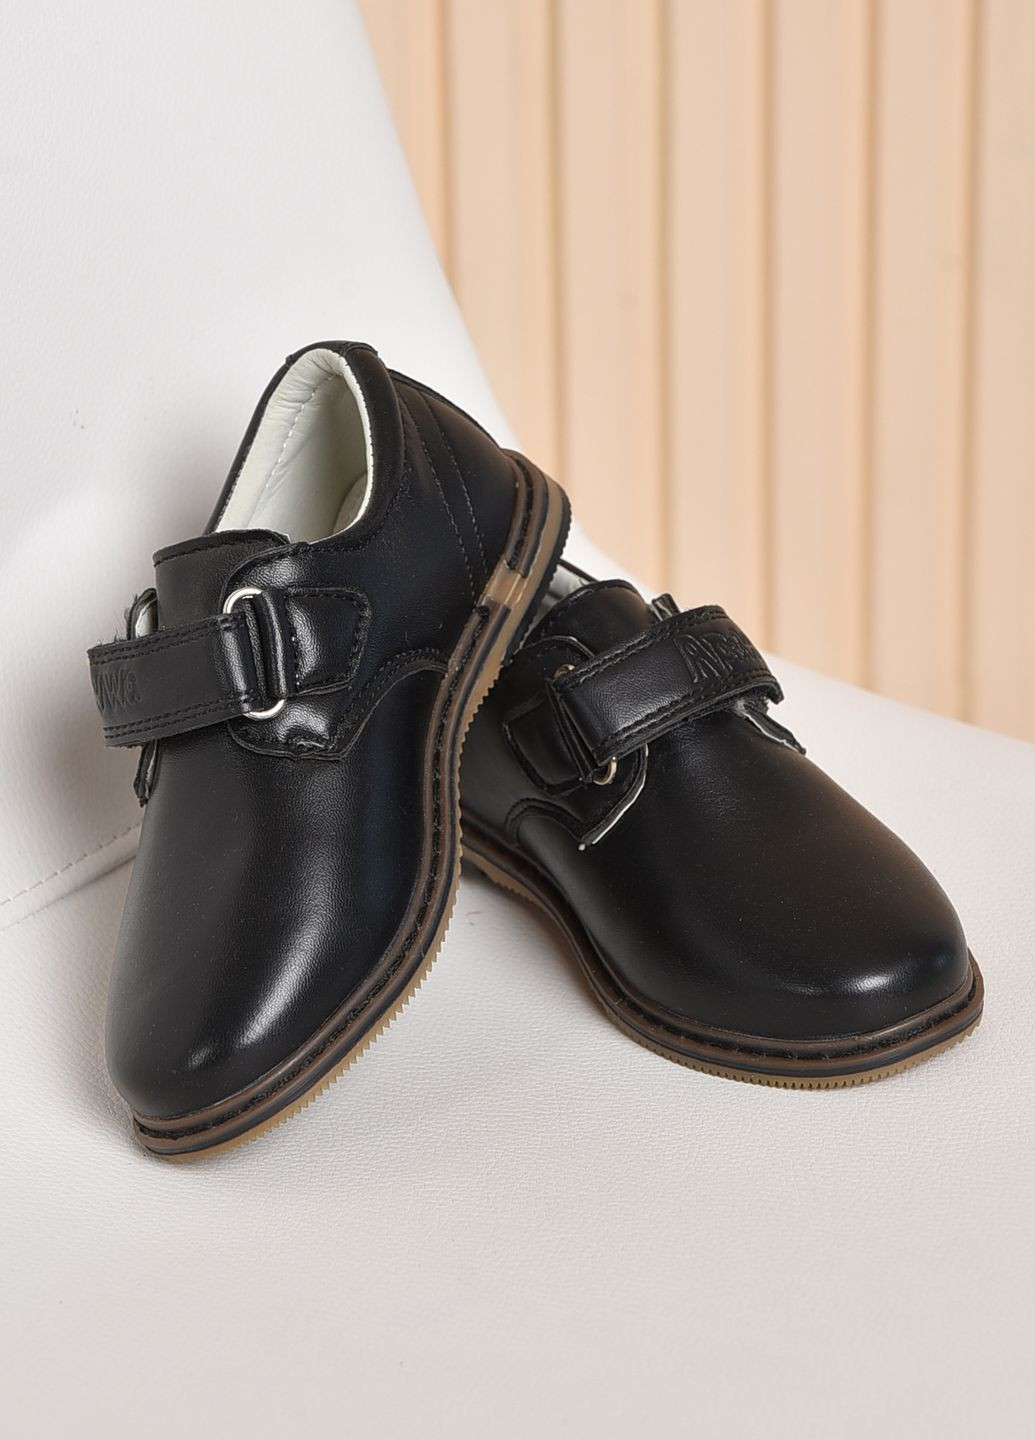 Черные туфли детские для мальчика черного цвета на липучке Let's Shop